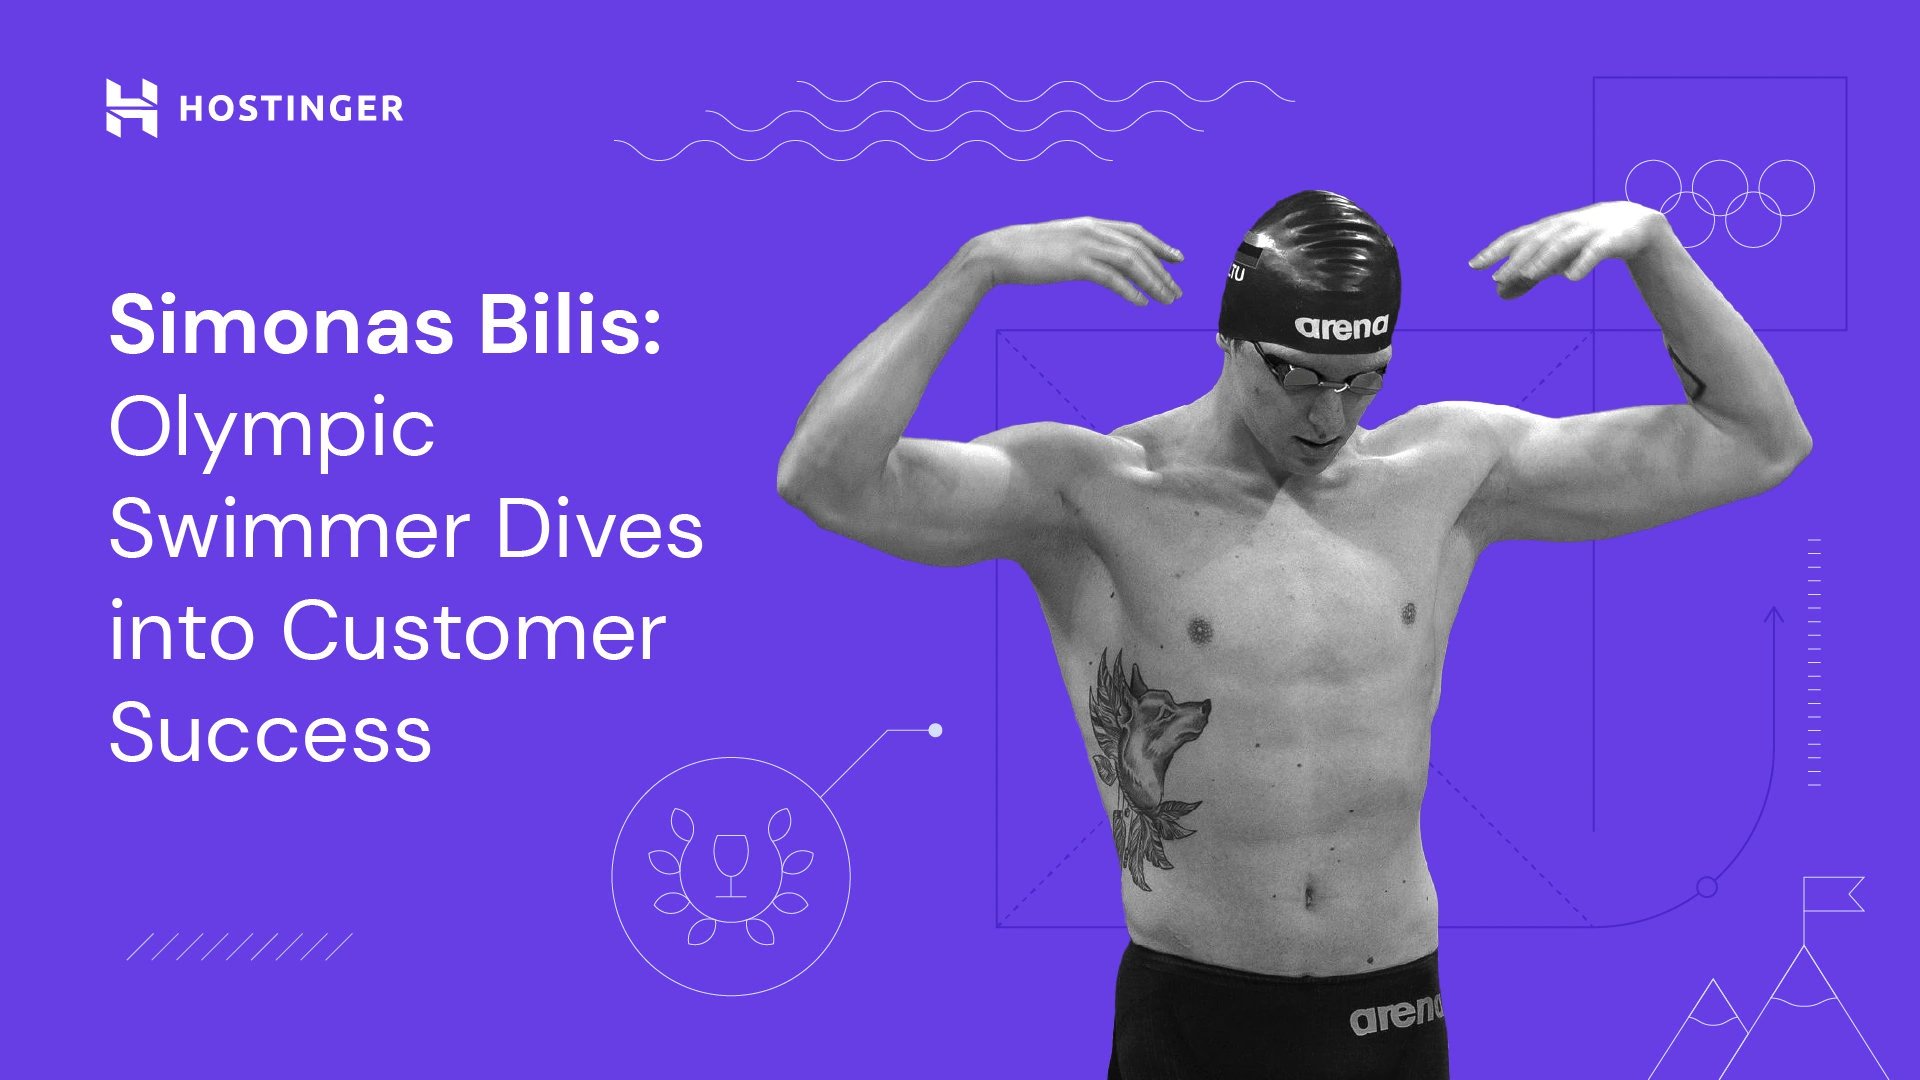 سیموناس بیلیس: شناگر المپیک به سمت موفقیت مشتری می رود 